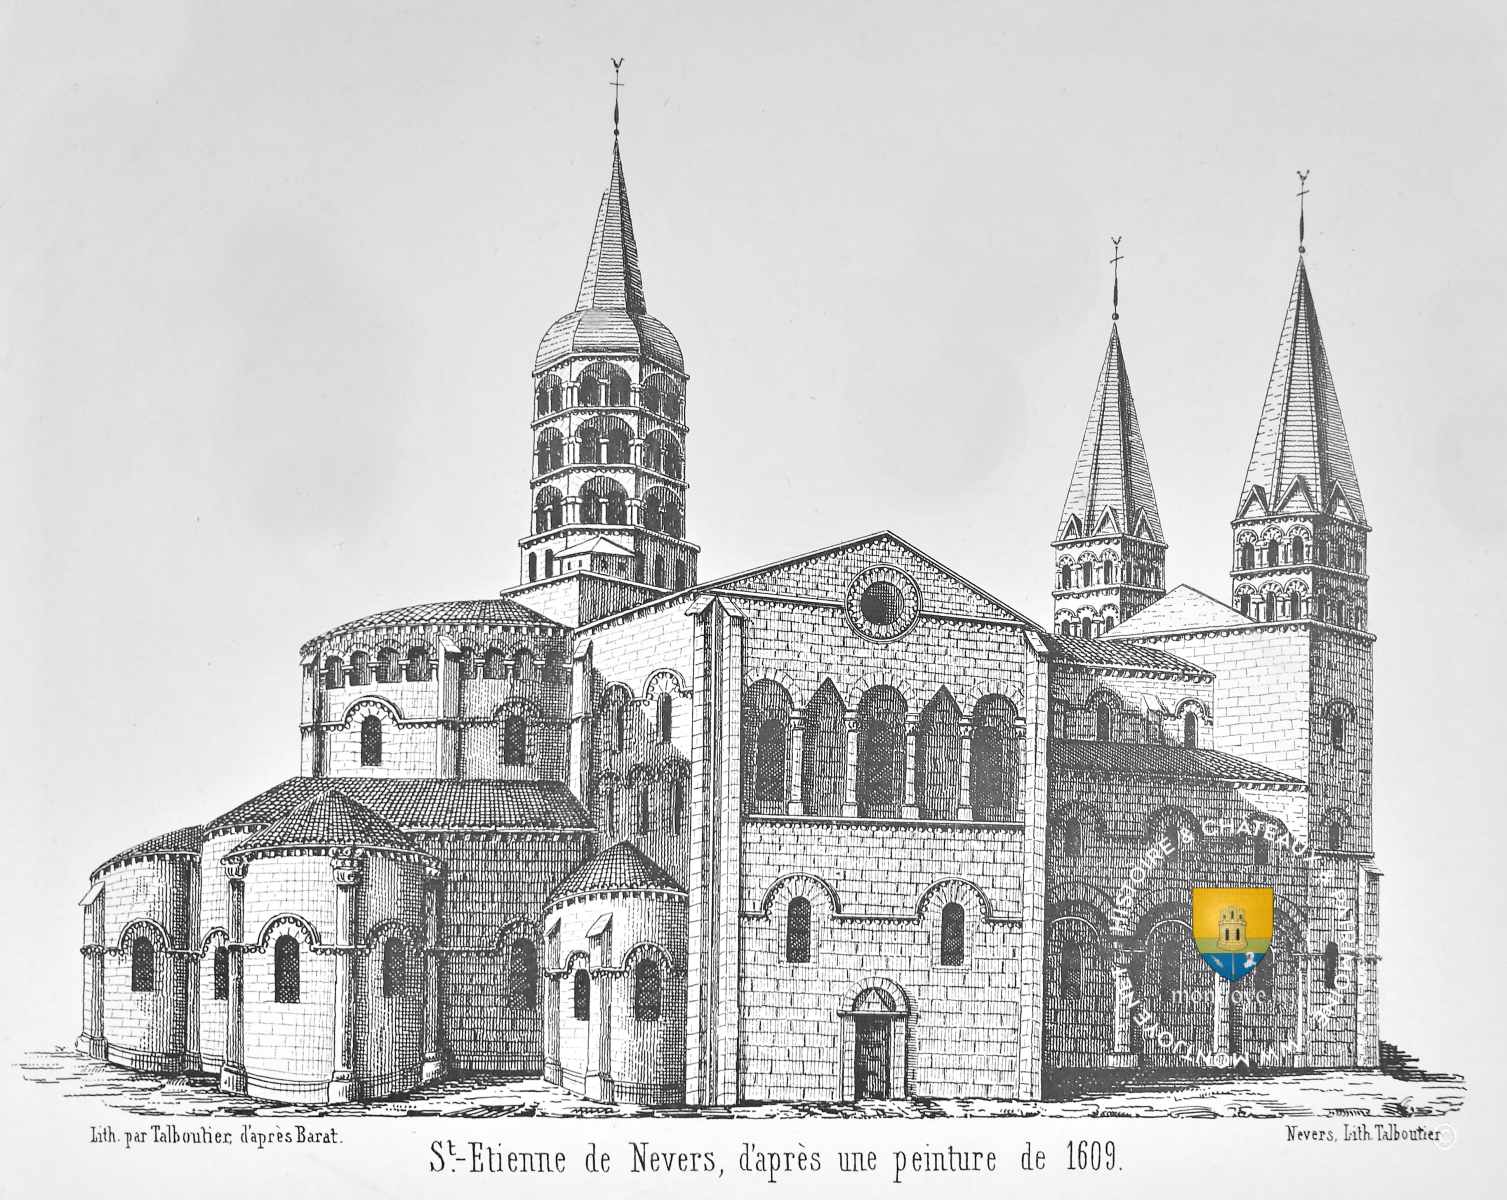 Eglise Saint Etienne de Nevers au XVIIe siècle, avant qu'elle soit dégradée par la révolution française